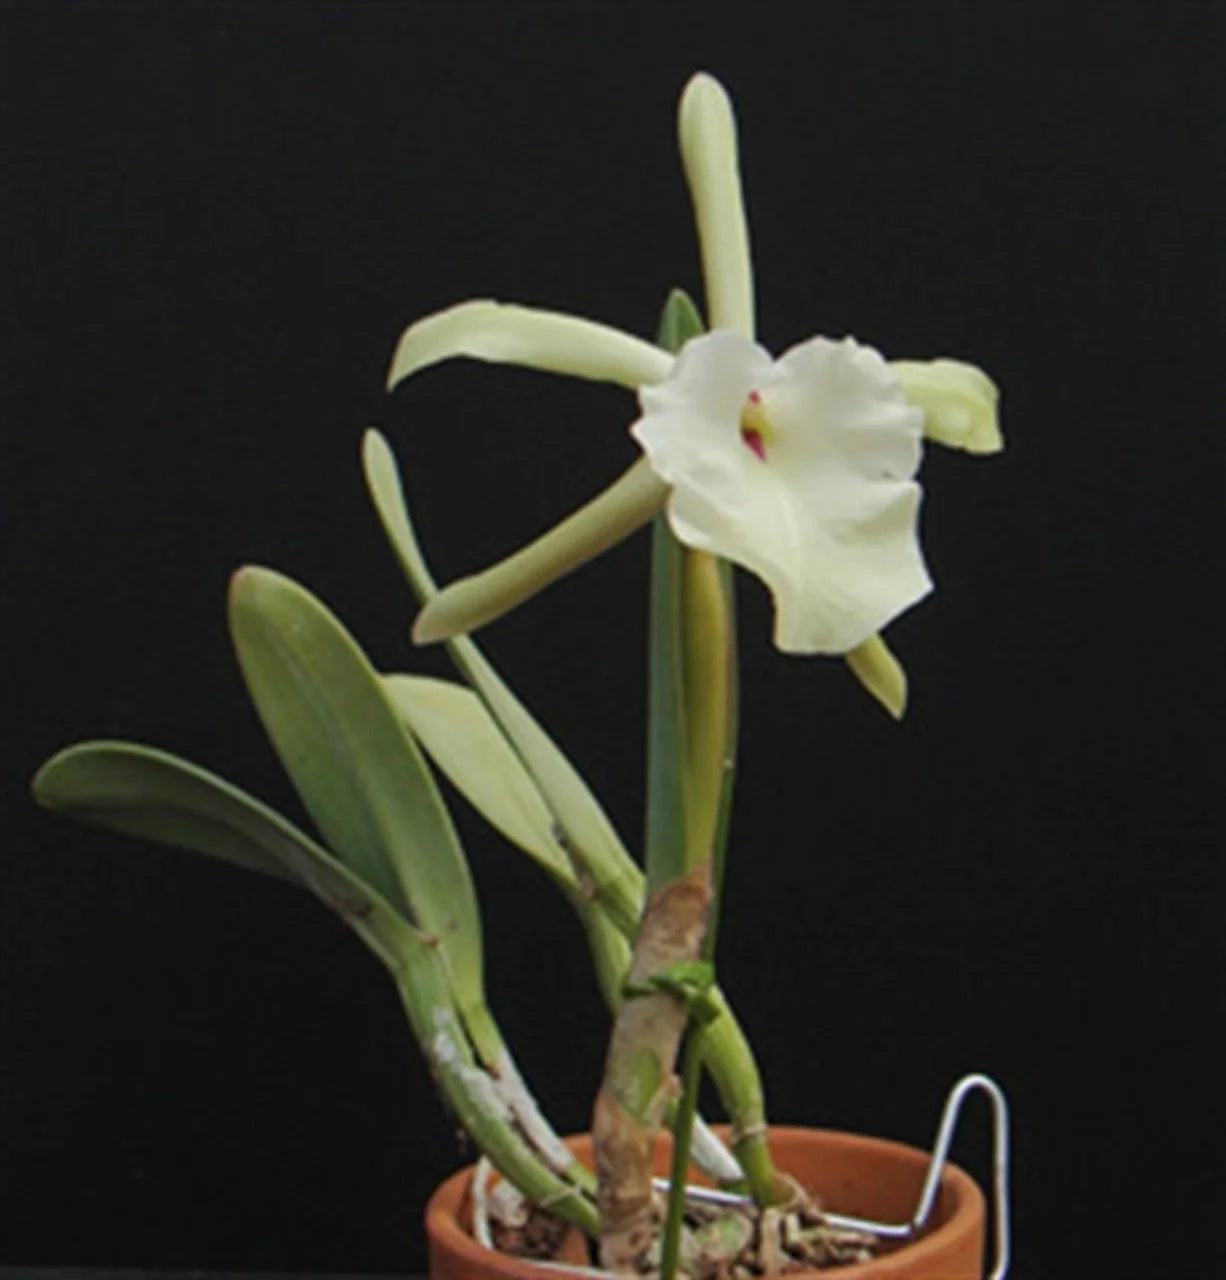 Cattleya Alliance: Rhyncholaelia glauca Cattleya La Foresta Orchids 